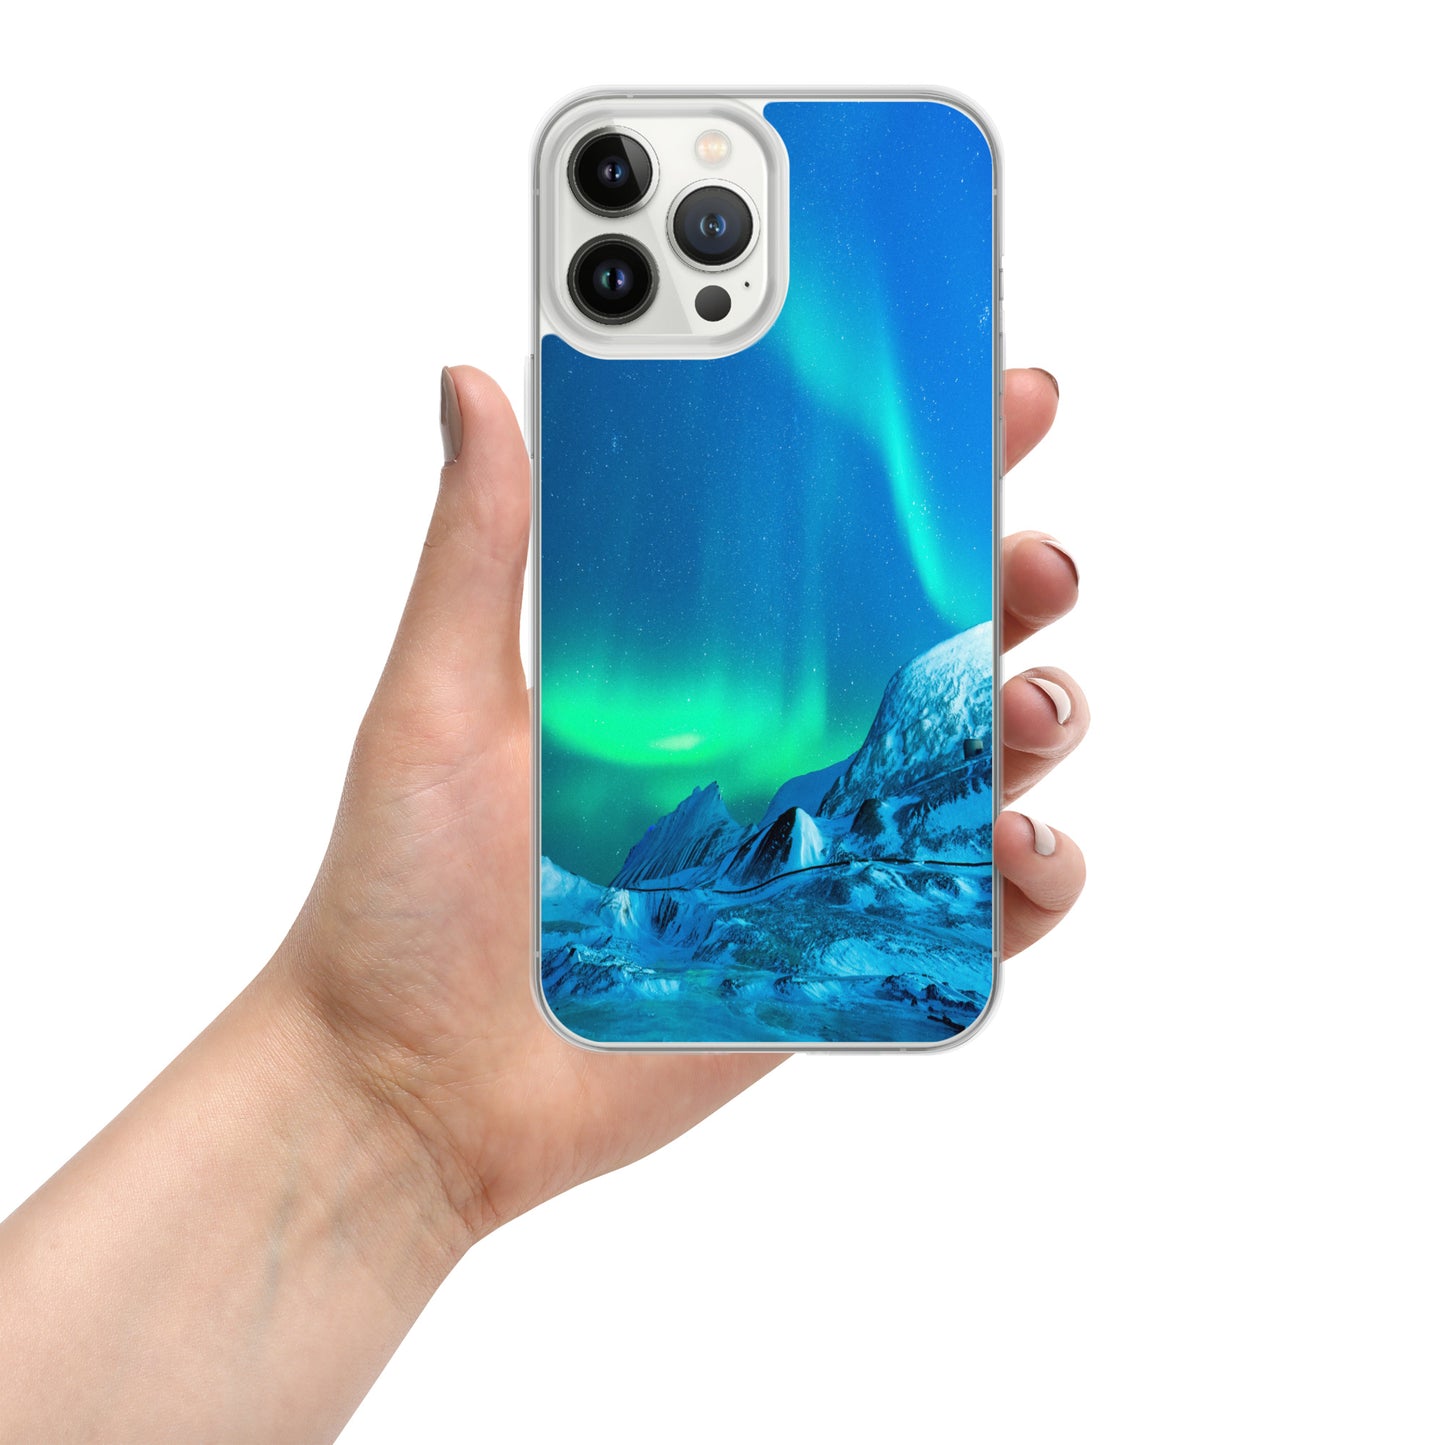 Unique Aurora Borealis iPhone Cover Case - Northern Light Phone Cover Case - Clear Case for iPhone - Perfect Aurora Lovers Gift 3